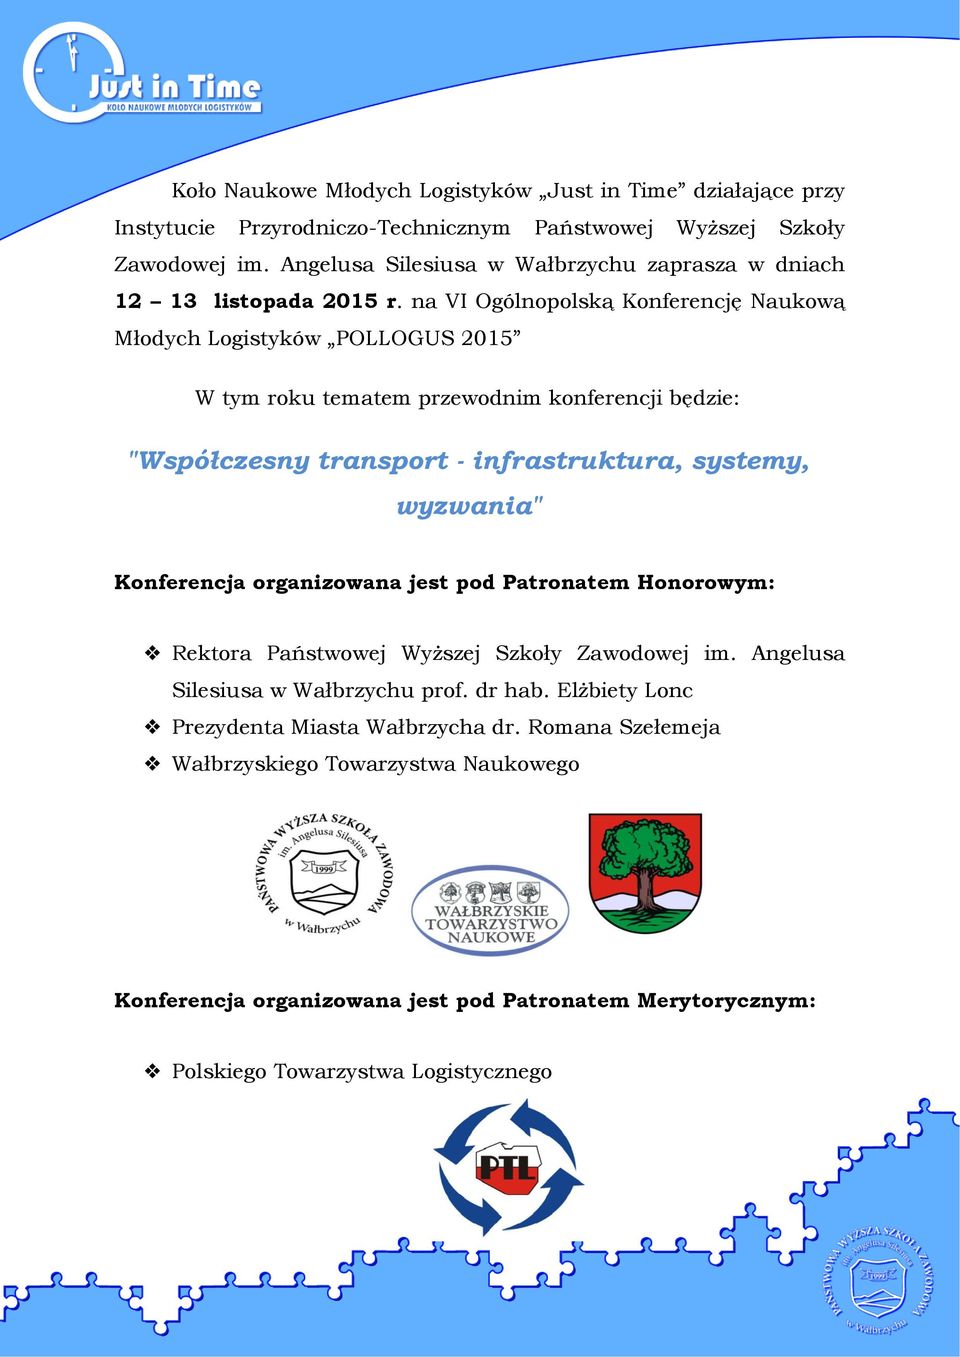 na VI Ogólnopolską Konferencję Naukową Młodych Logistyków POLLOGUS 2015 W tym roku tematem przewodnim konferencji będzie: "Współczesny transport - infrastruktura, systemy, wyzwania"